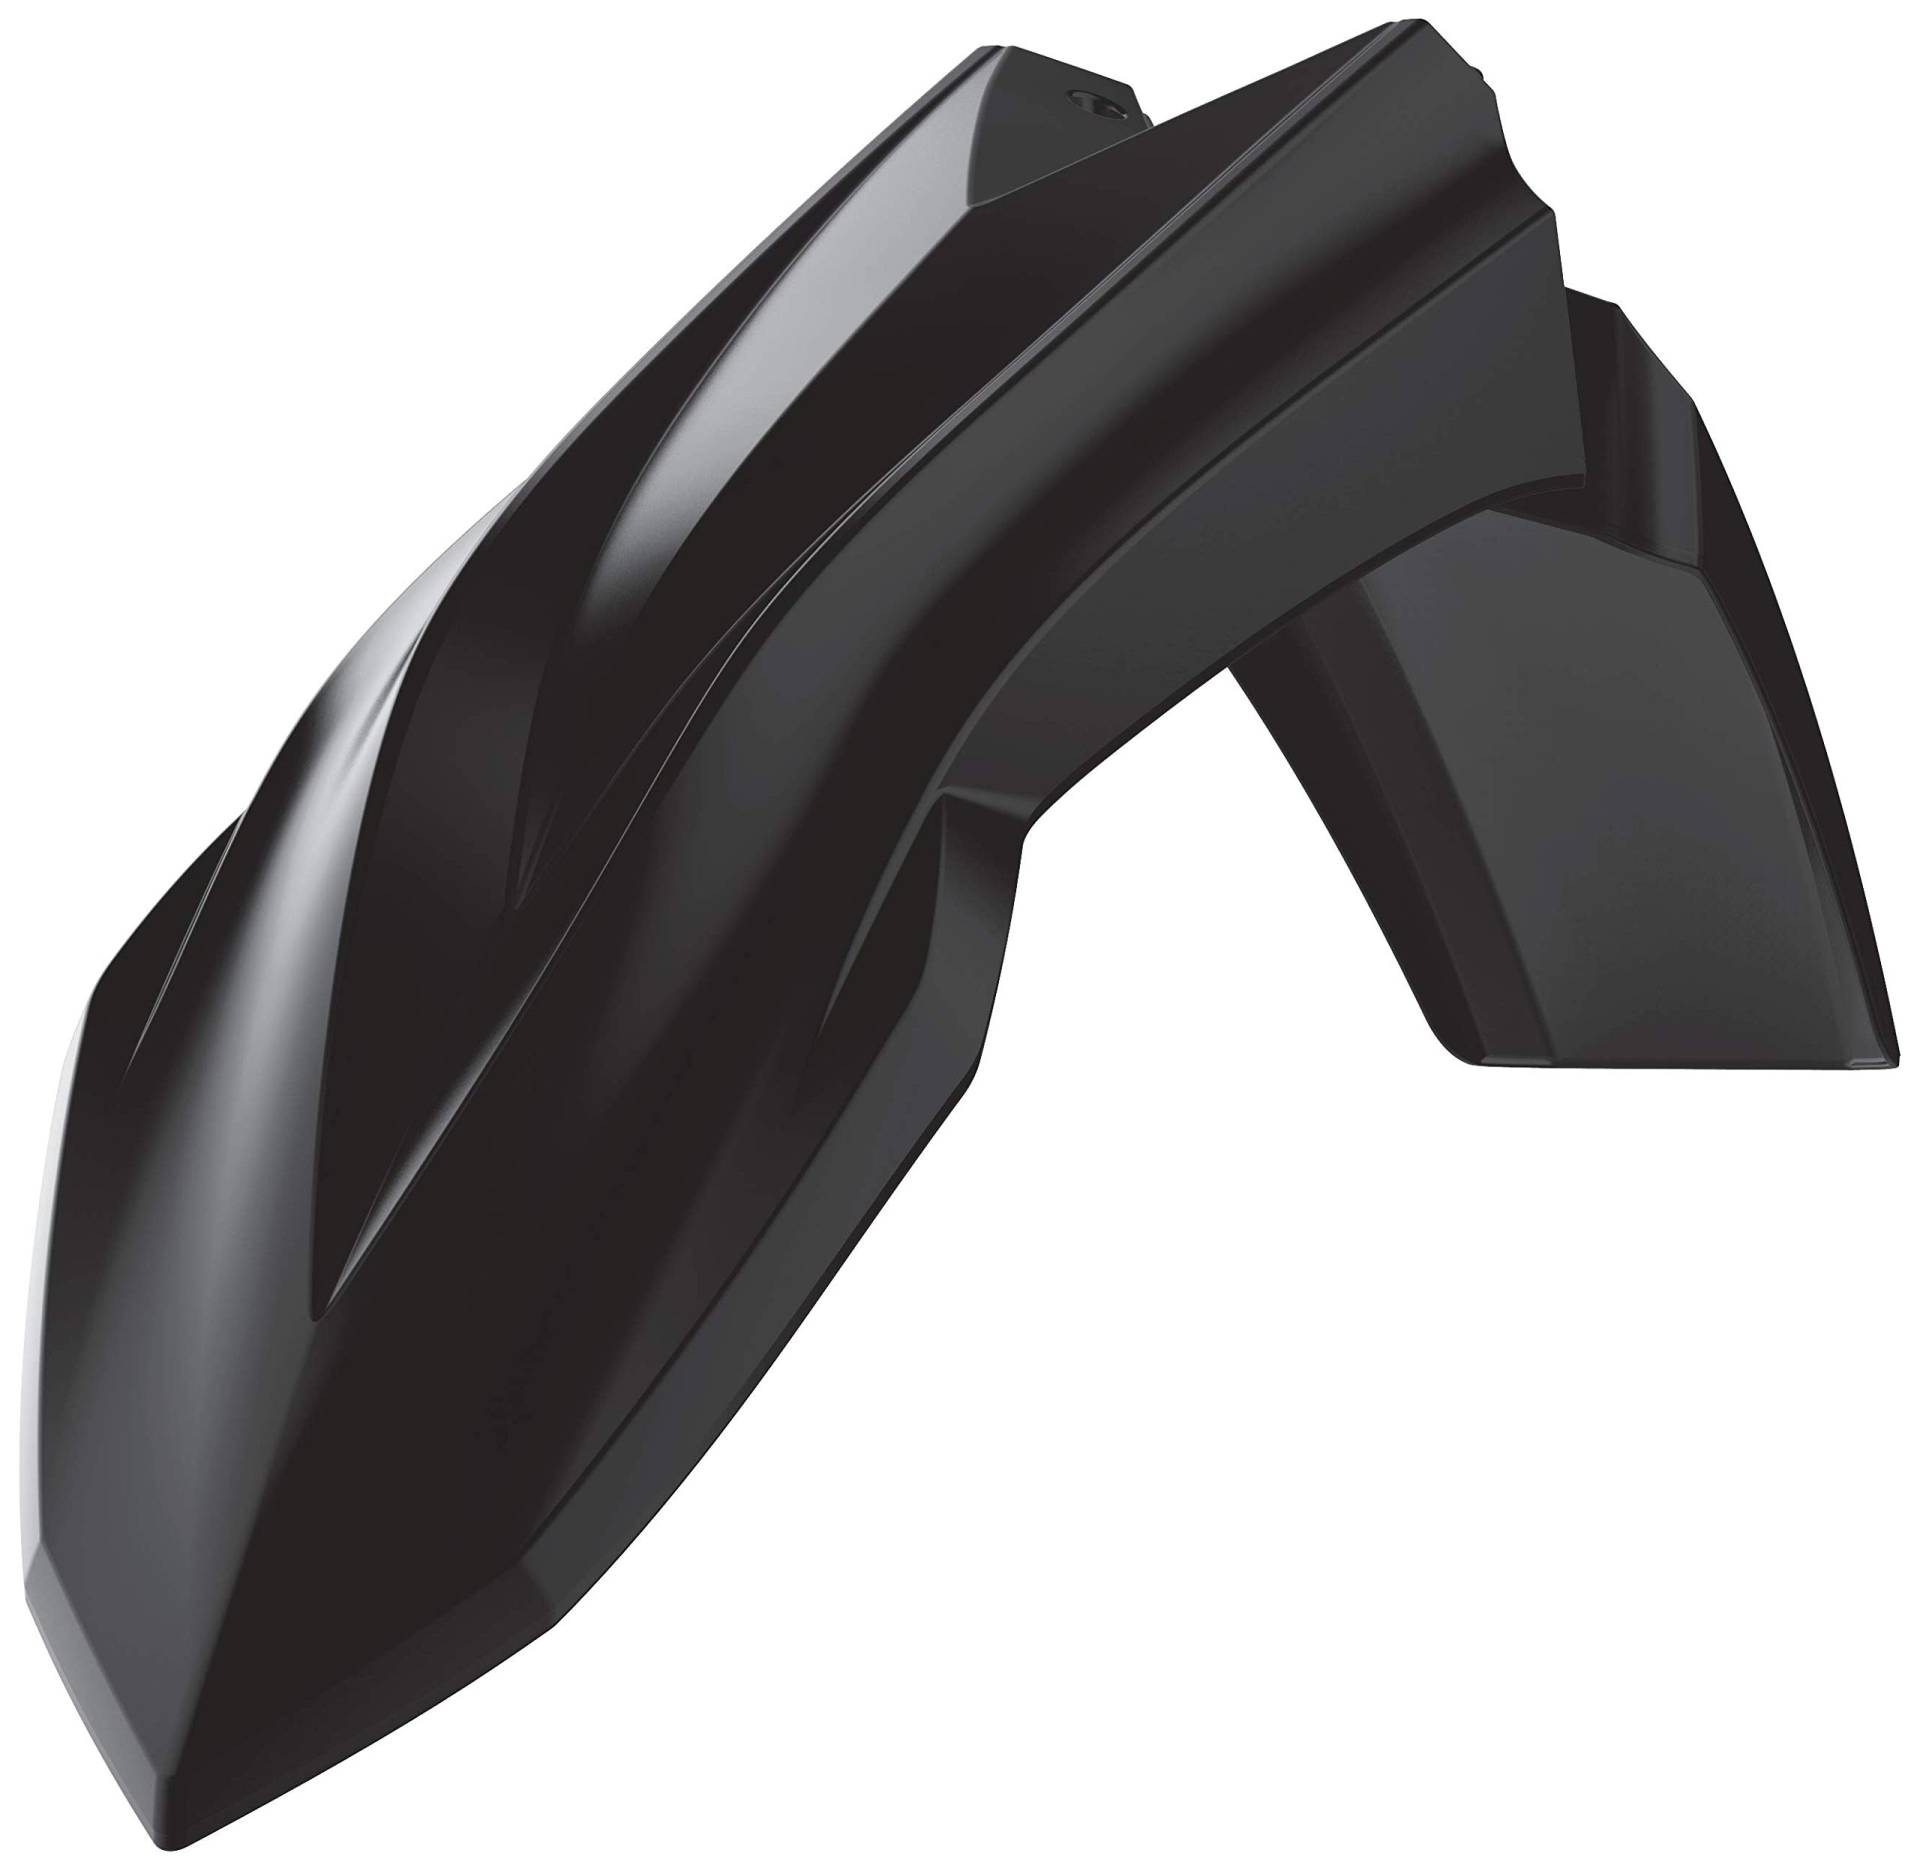 POLISPORT 8585200002 - Originaler Nachbau des Frontfenders aus strapazierfähigem und widerstandsfähigem glänzendem Kunststoff kompatibel mit Motorrädern BETA in Farbe schwarz von Polisport